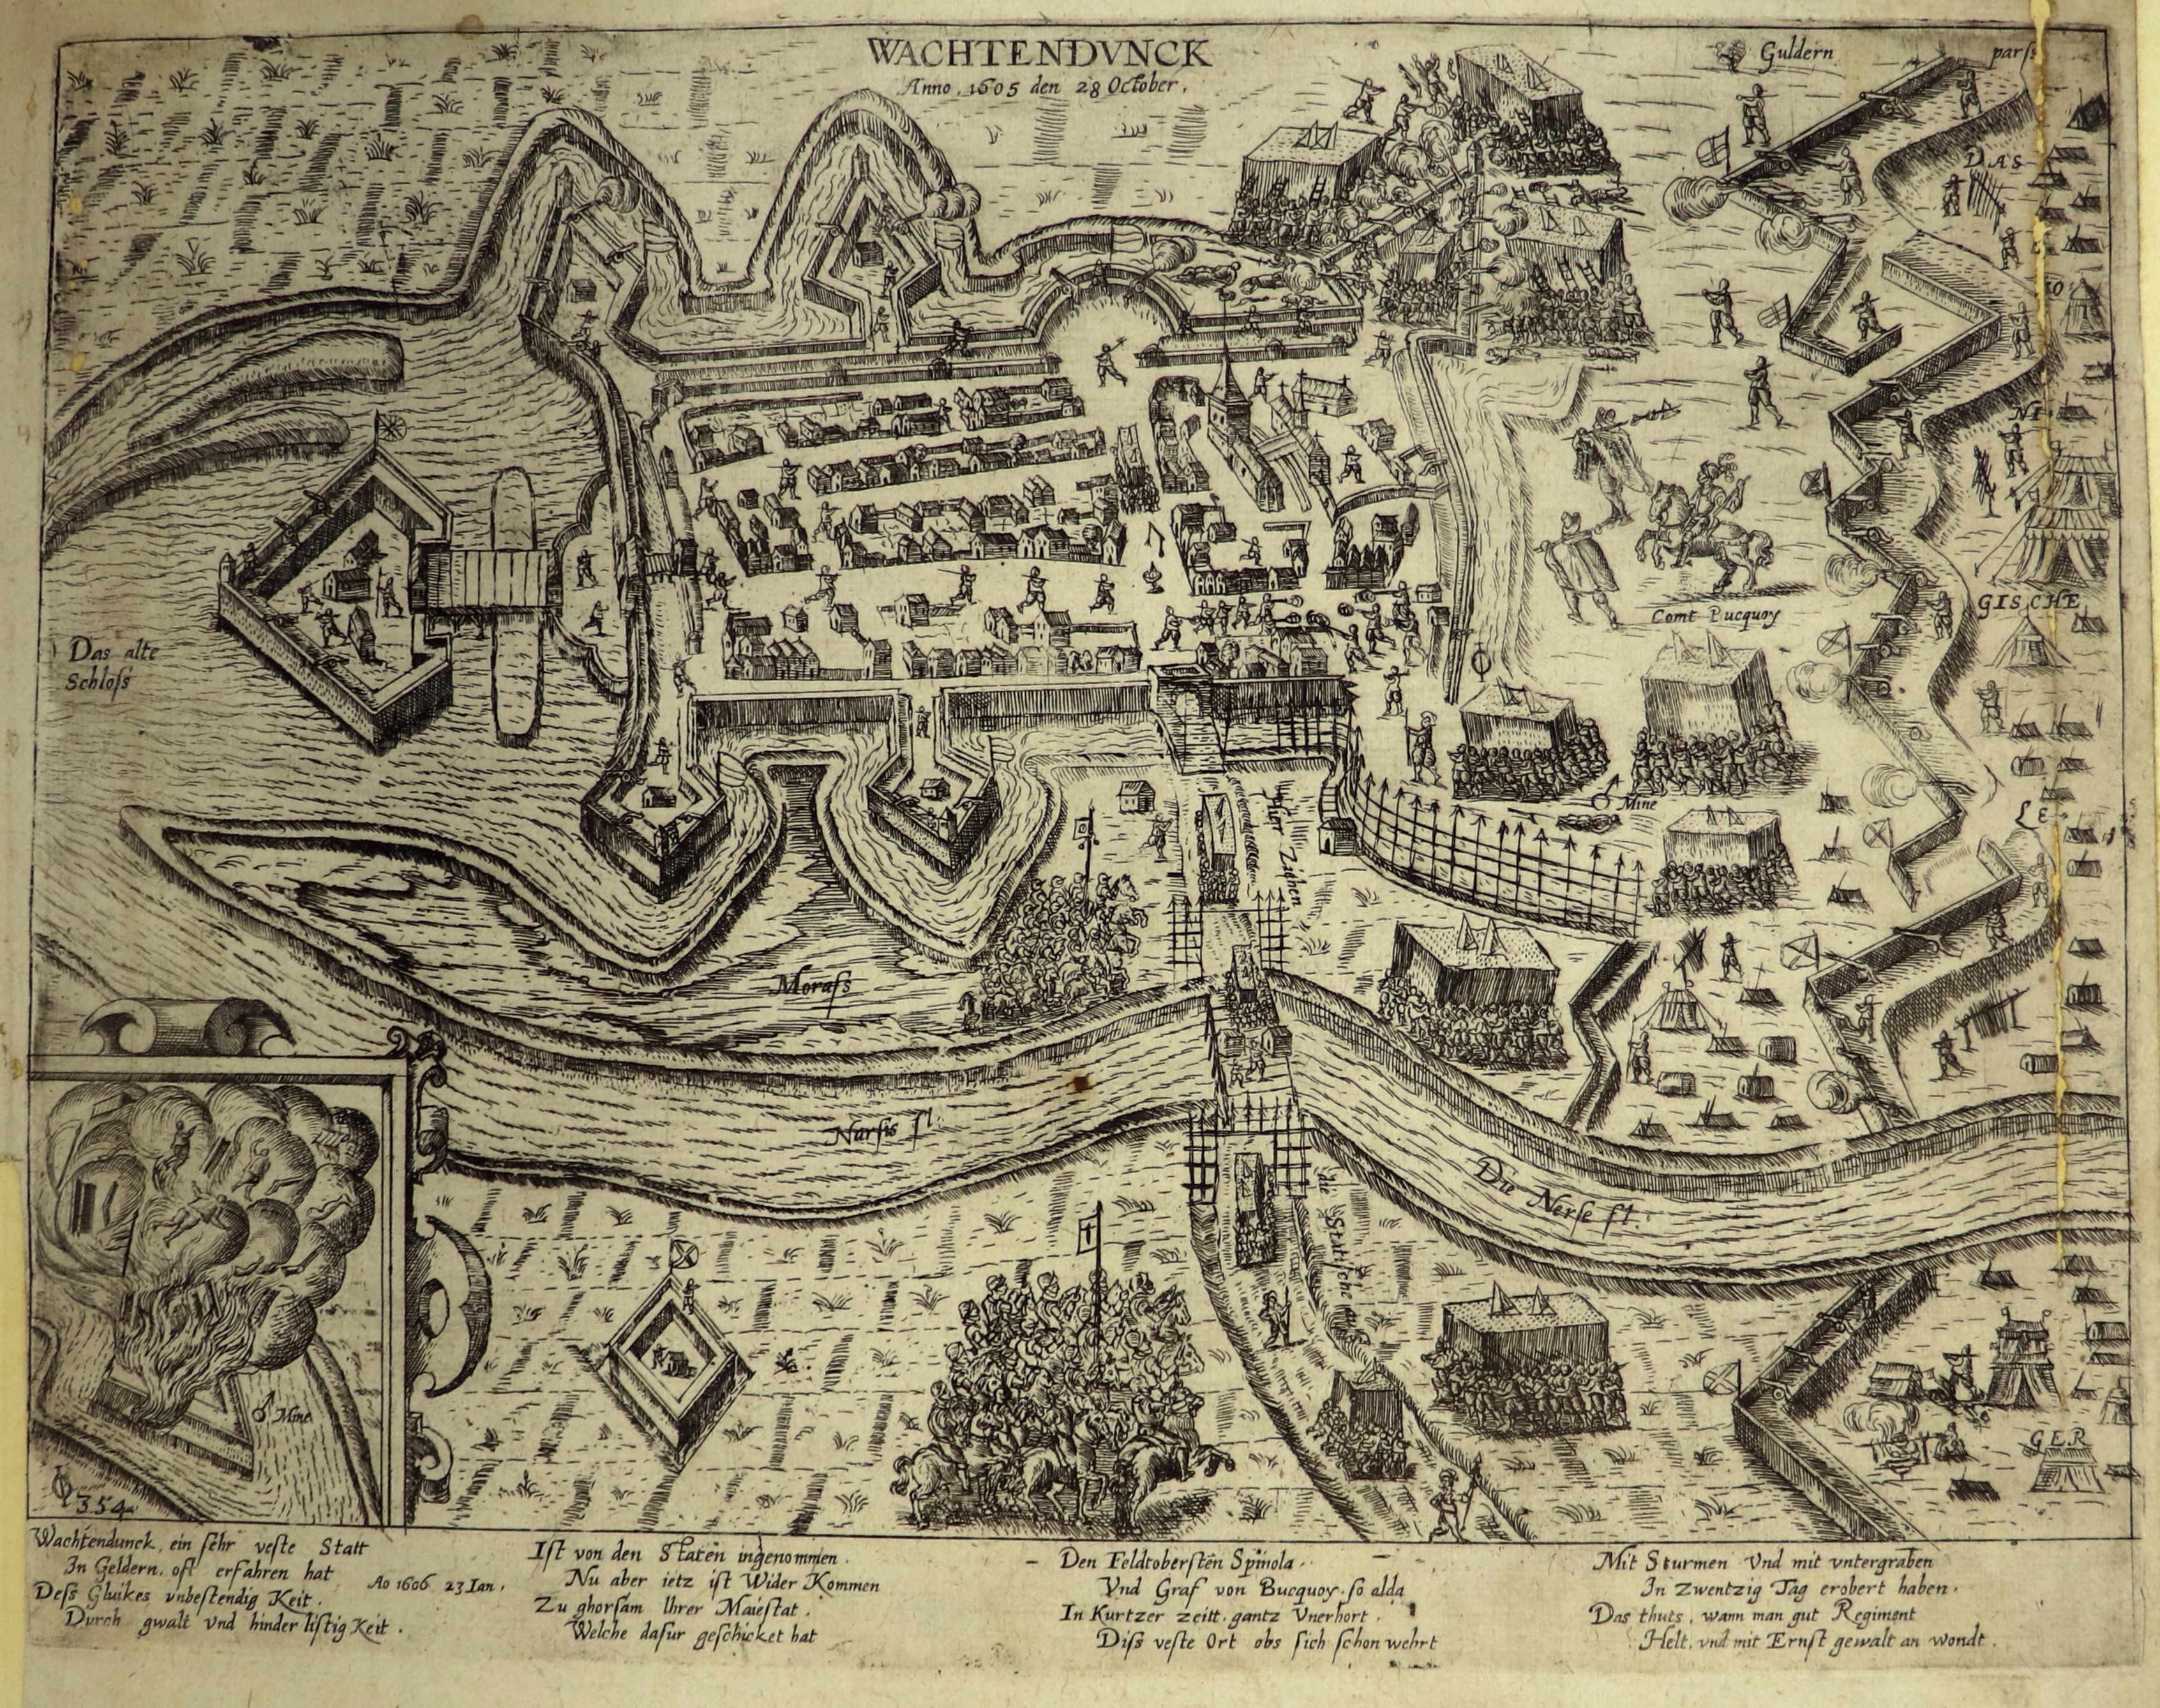 Kupferstich zur Eroberung von Wachtendonk, 28. Oktober 1605 (Hogenberg) (Städtisches Museum Schloss Rheydt CC BY)